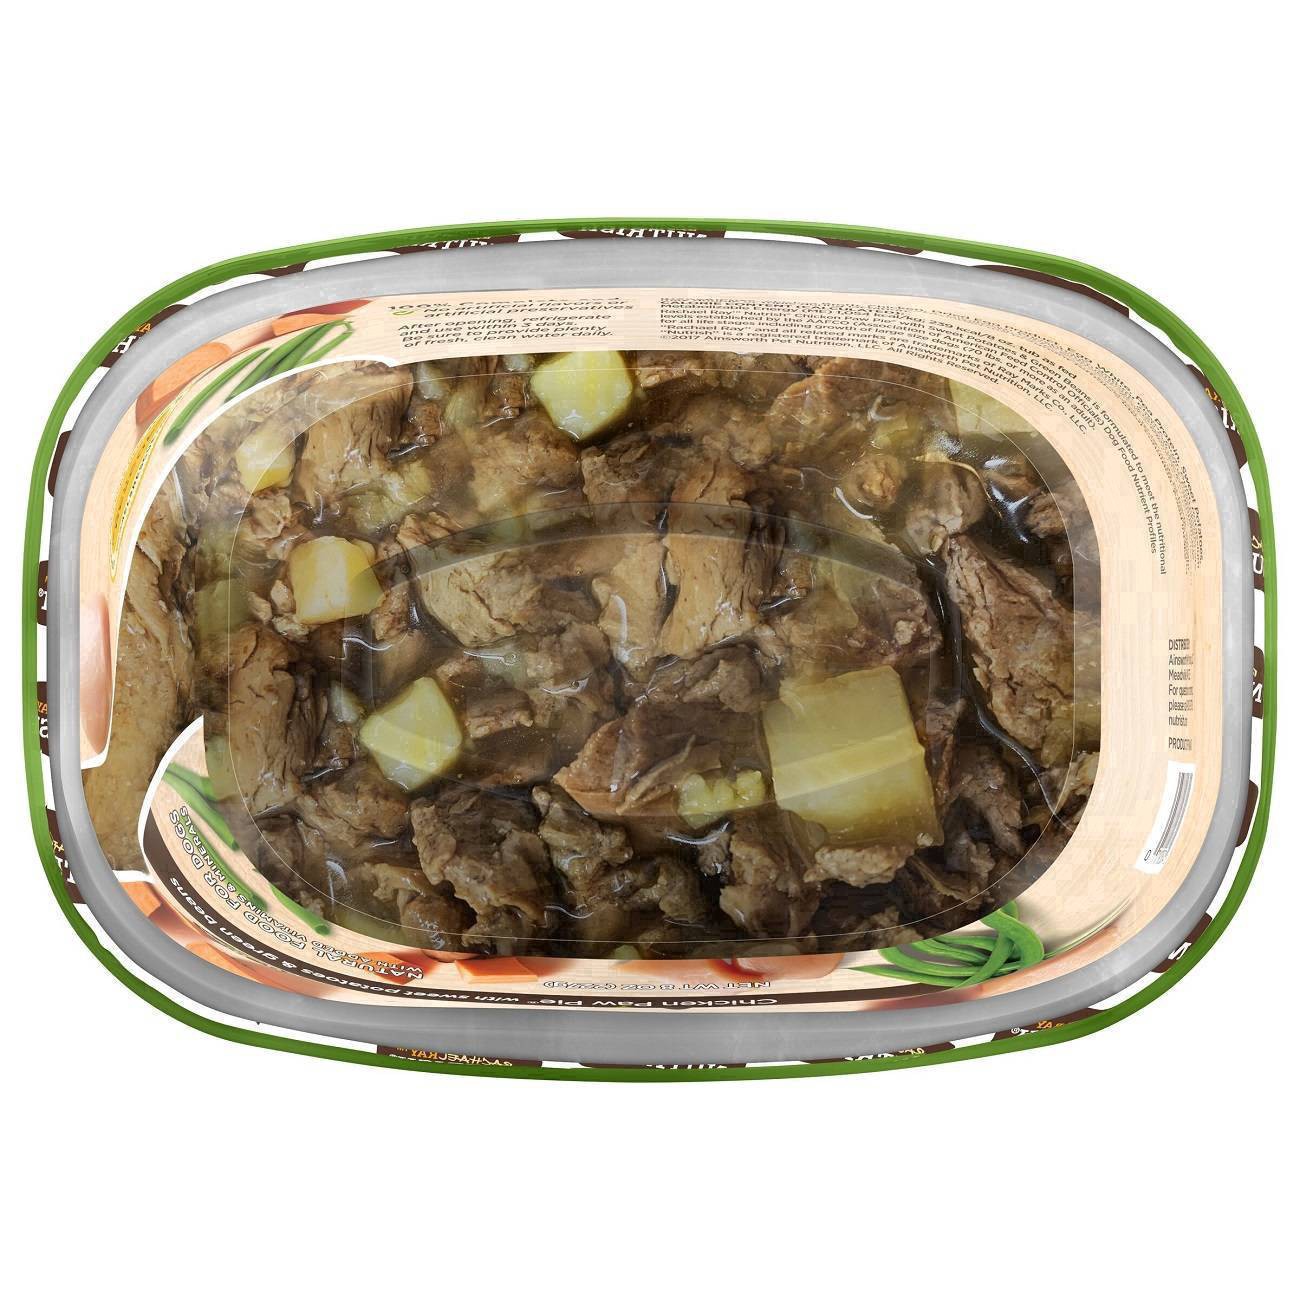 slide 36 of 106, Rachael Ray Nutrish Savory Lamb Stew Wet Dog Food, 8 oz. Tub, 8 oz